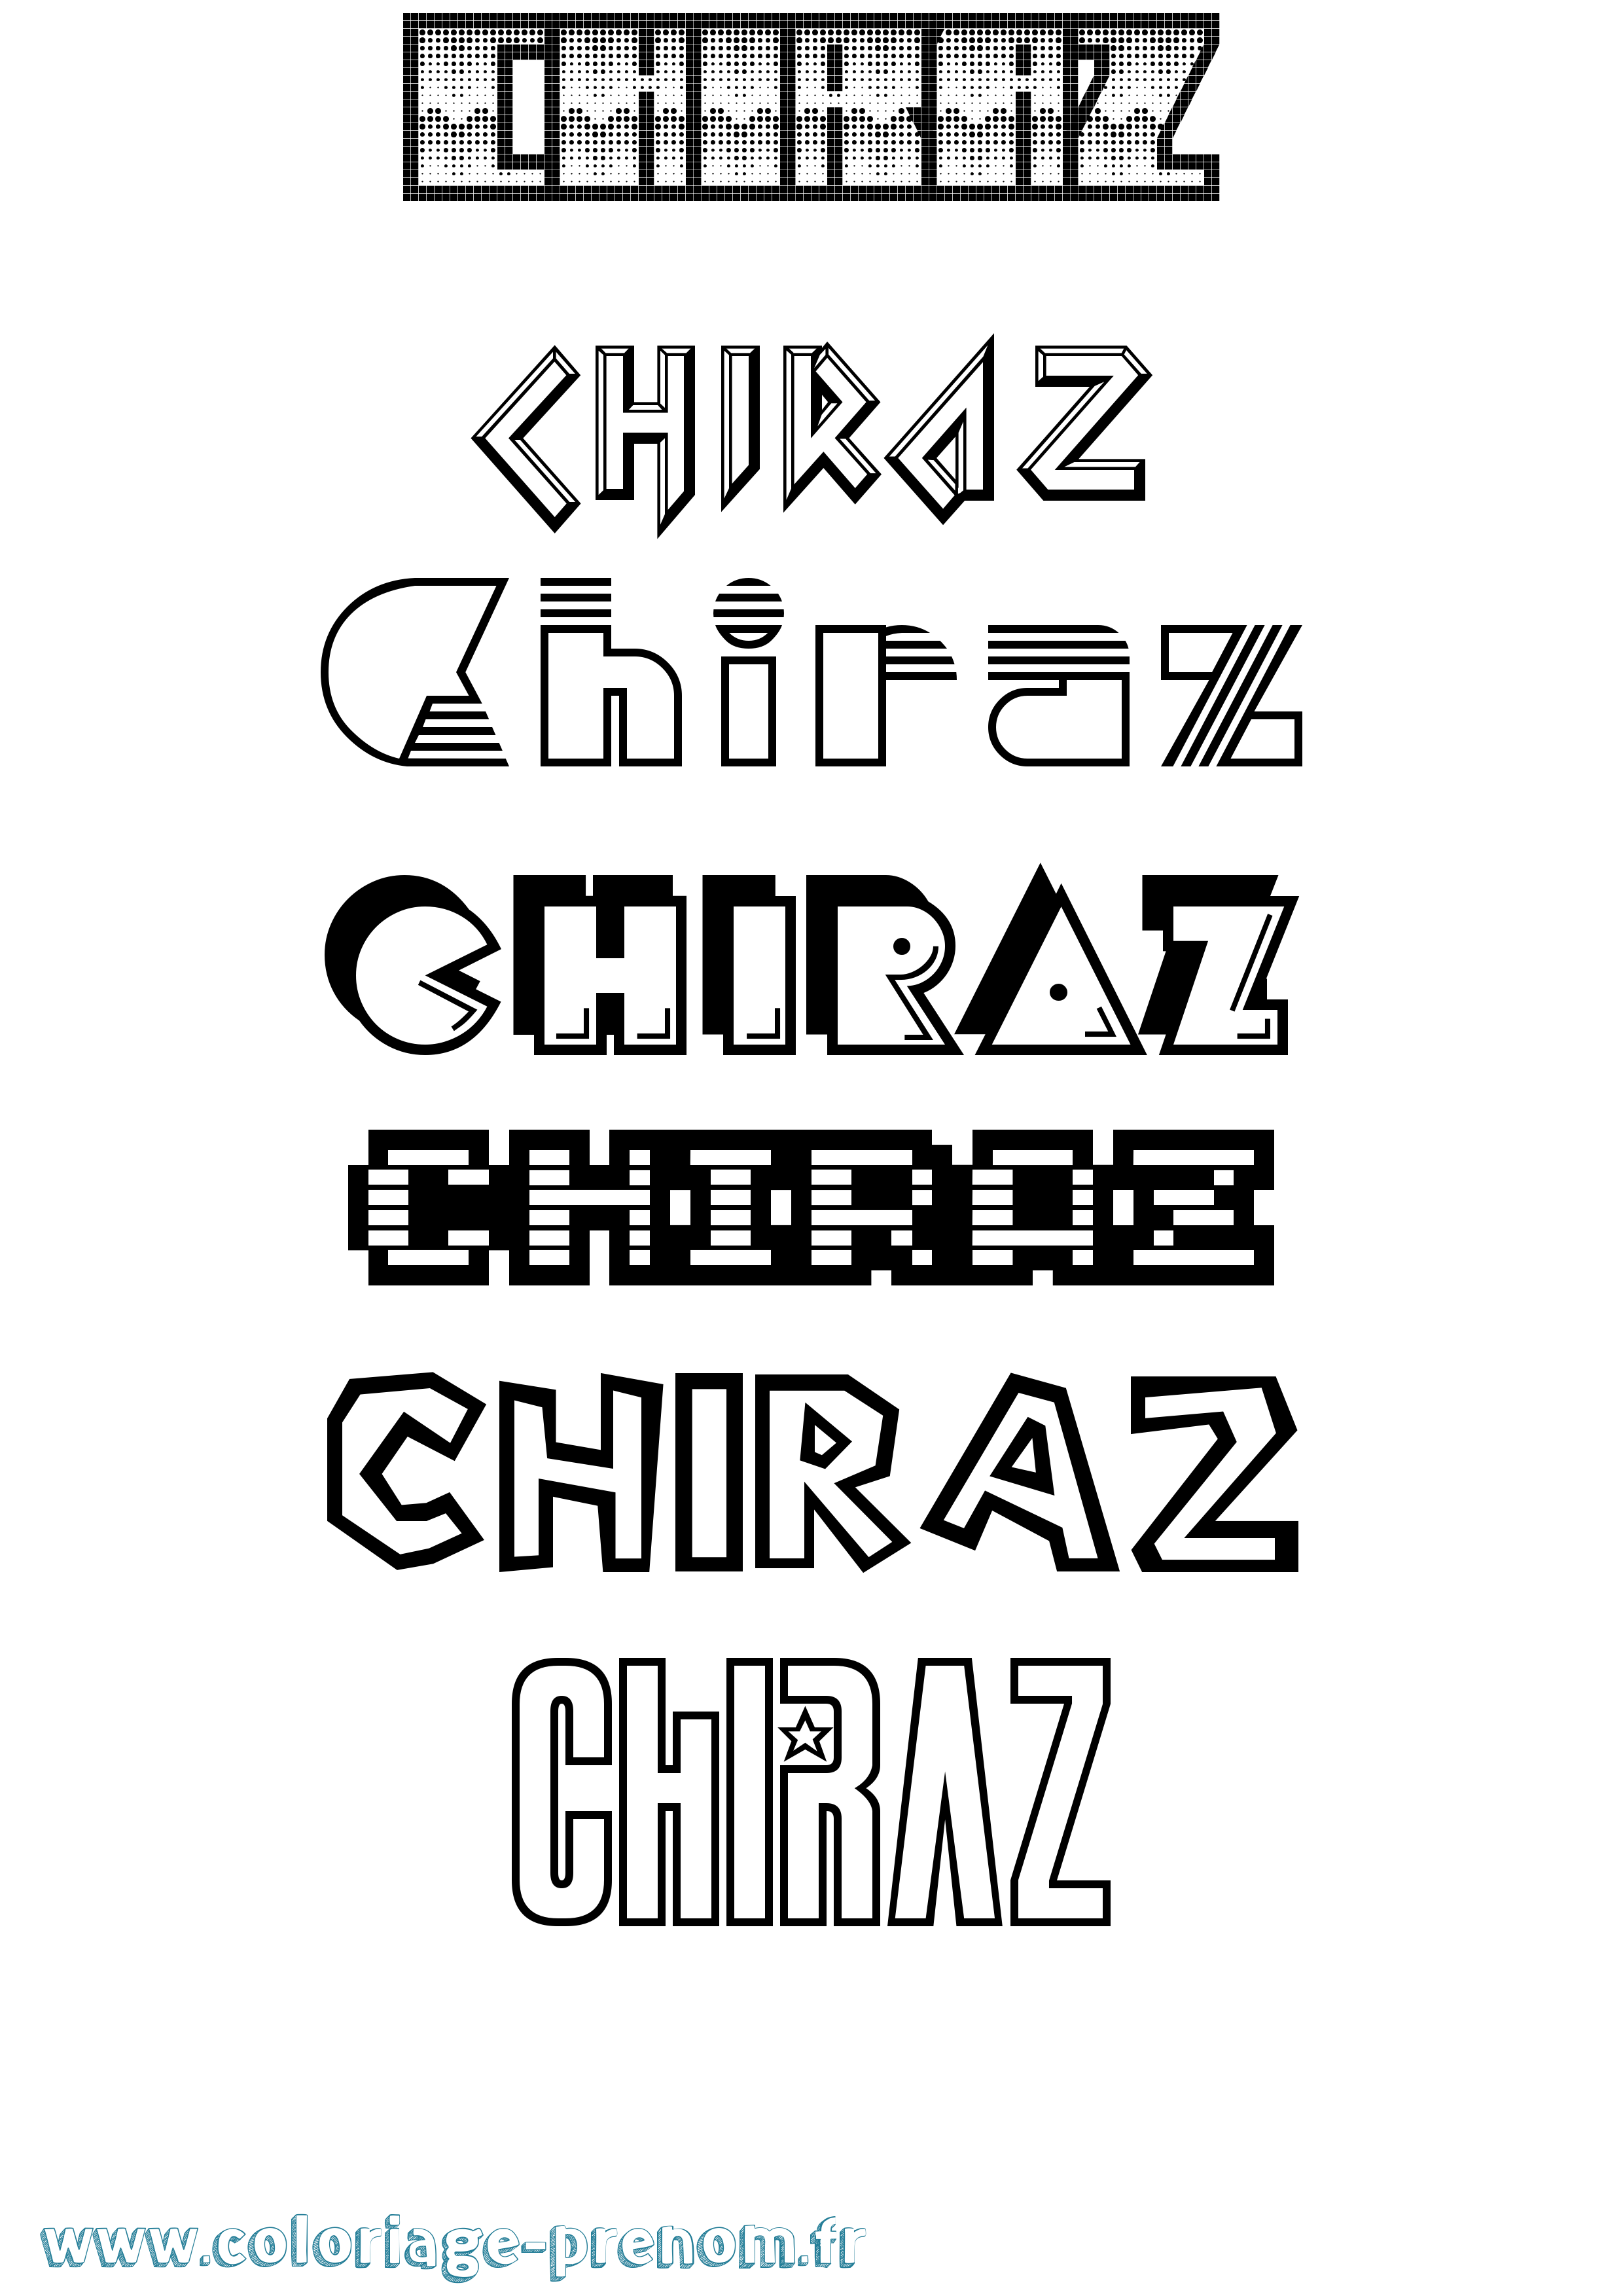 Coloriage prénom Chiraz Jeux Vidéos